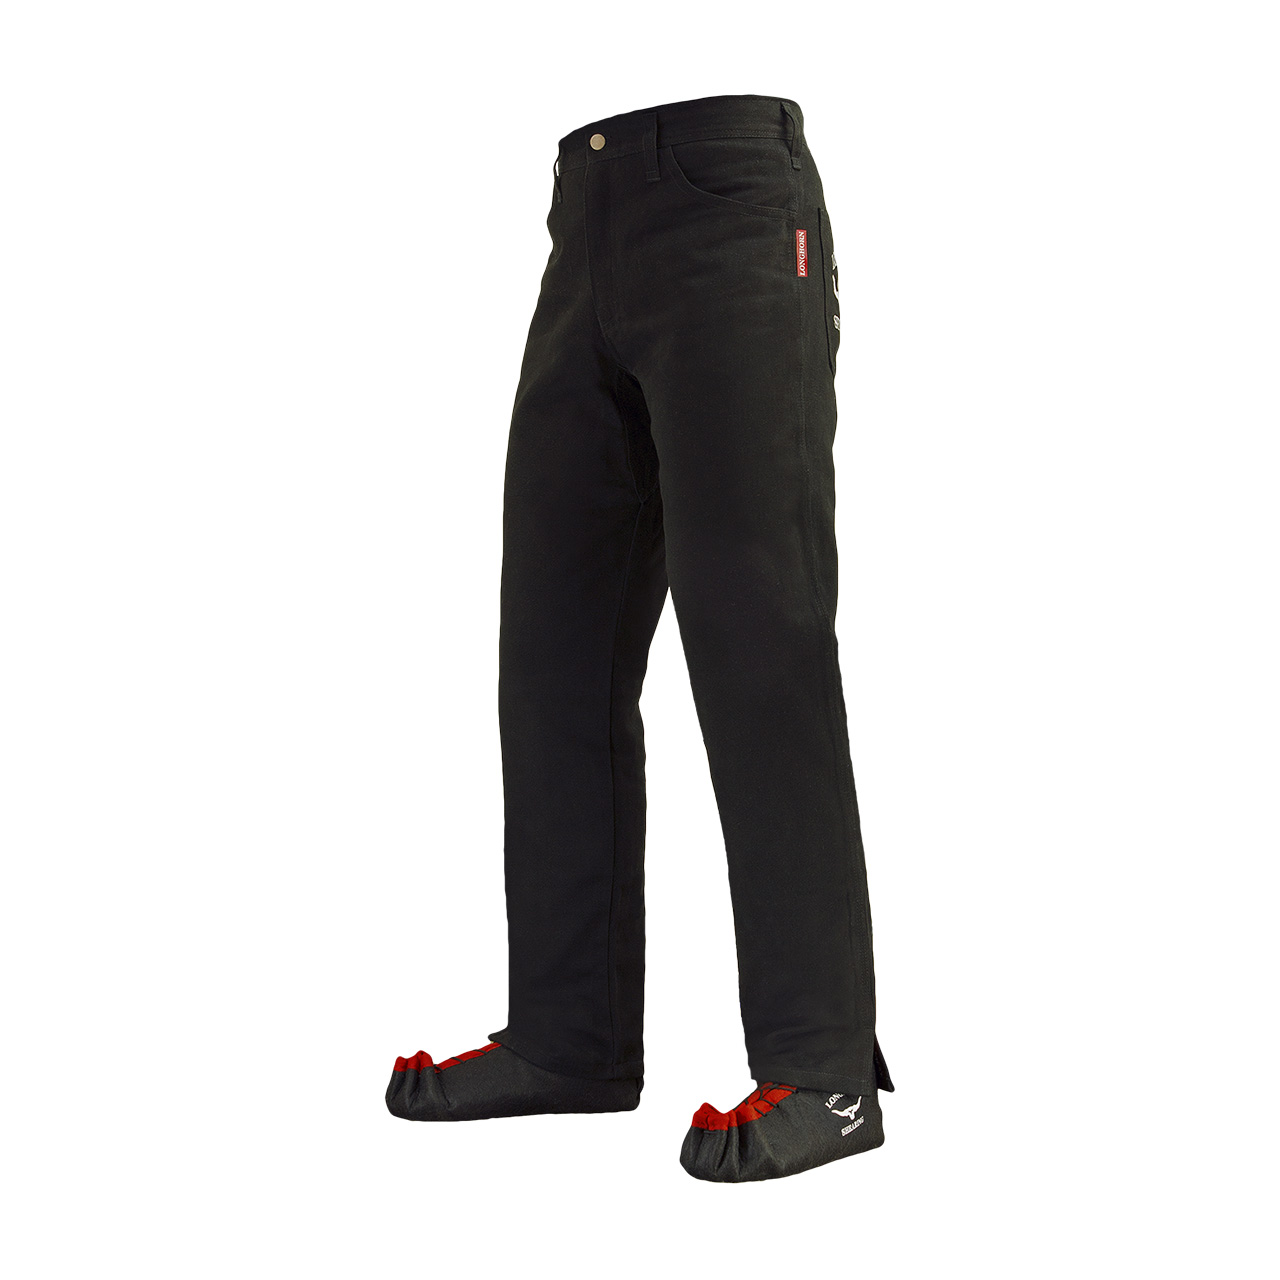 Longhorn™ kalhoty pro střihače ovcí s 2 předními kapsami velikost Slim 37/35 (7 1/2)